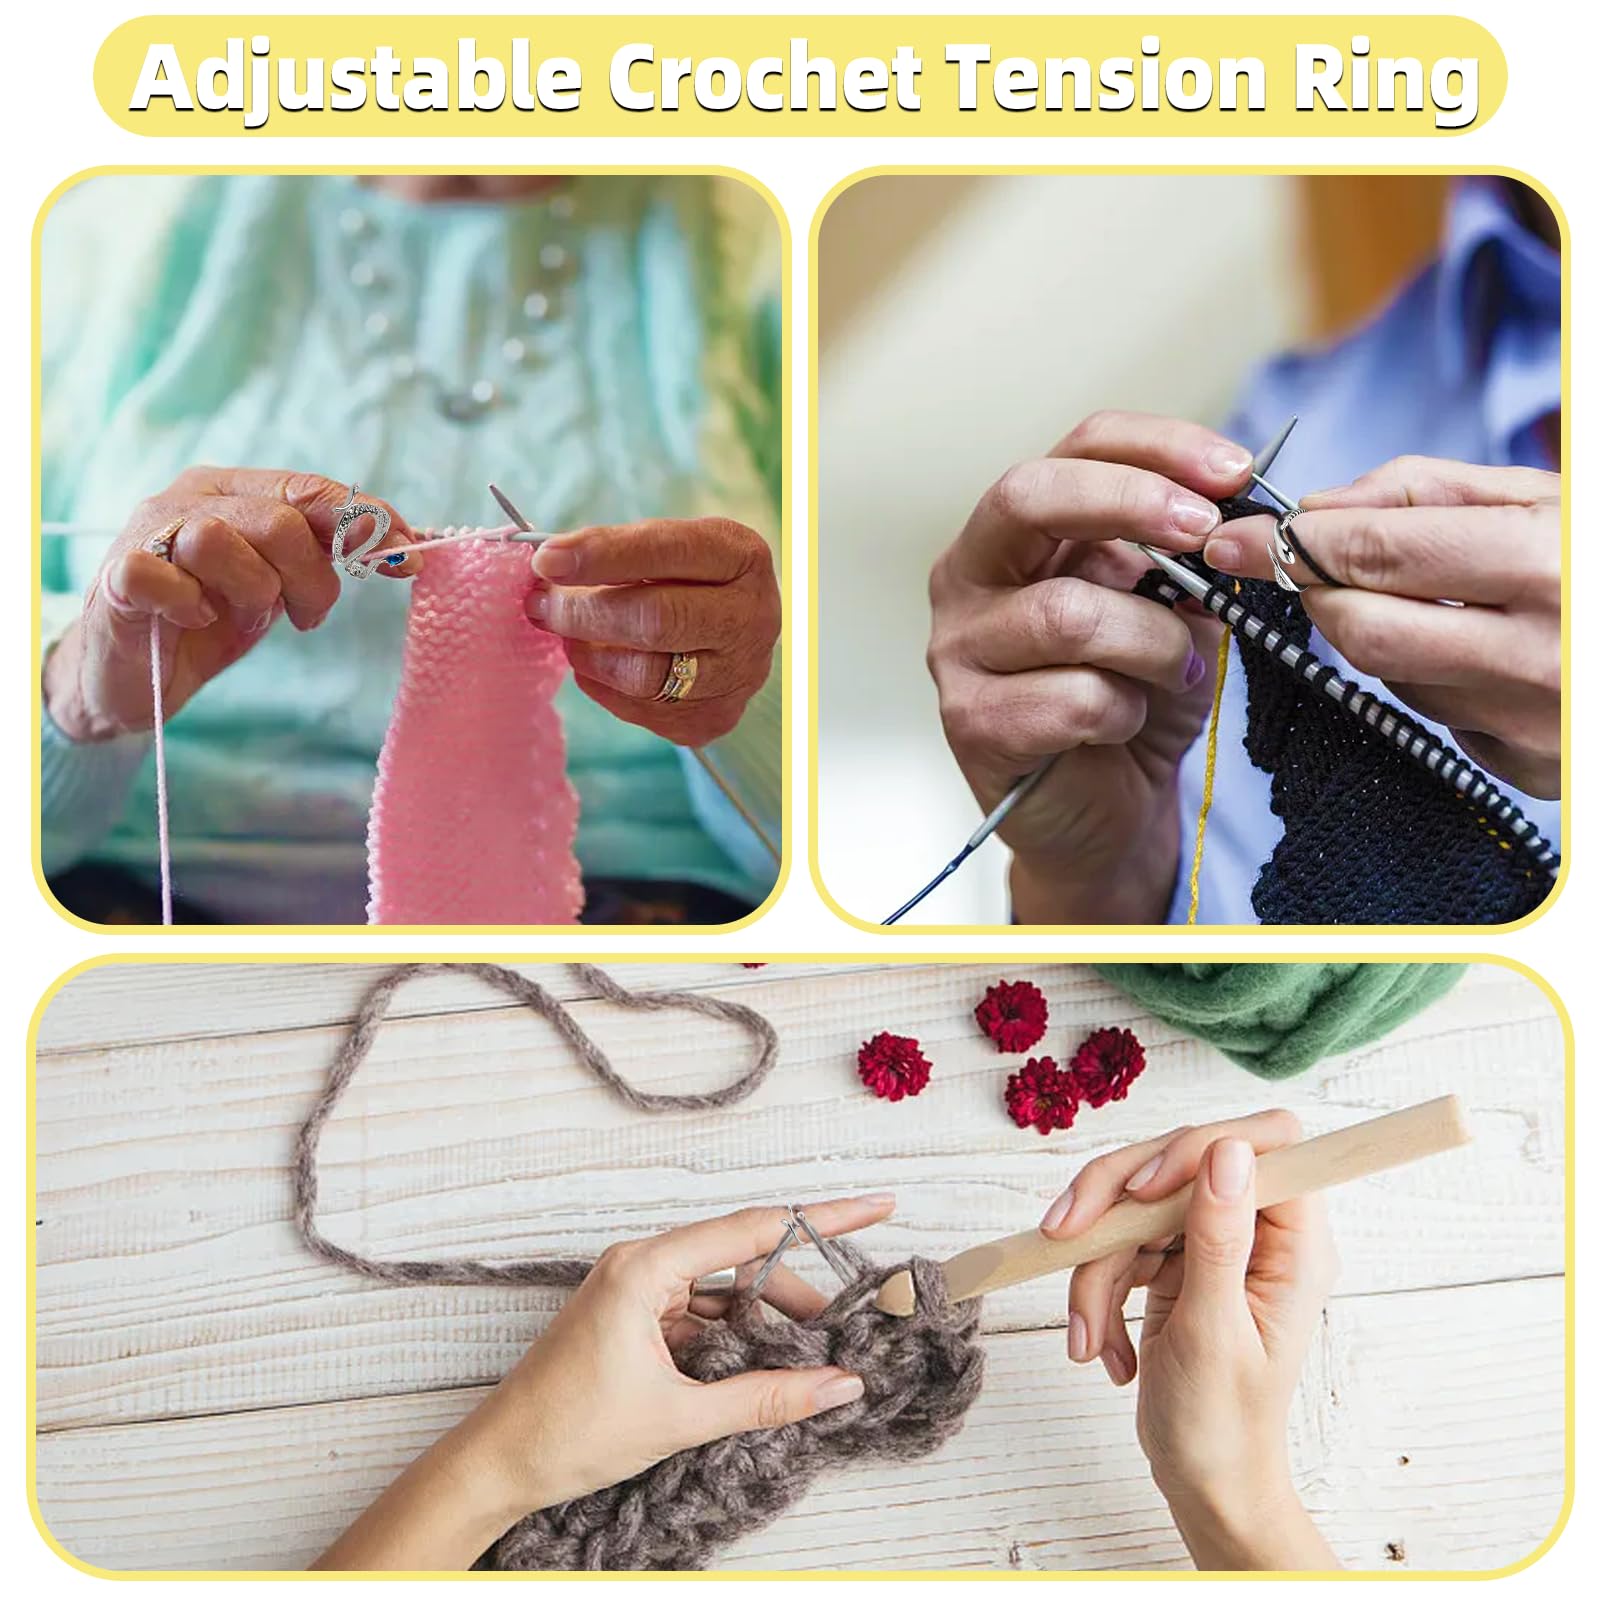 DEPAADER 10 Pcs Crochet Ring - Adjustable Crochet Ring Finger Yarn Guide Knitting Tension Rings for Crocheting Cat Snake Yarn Ring for Women